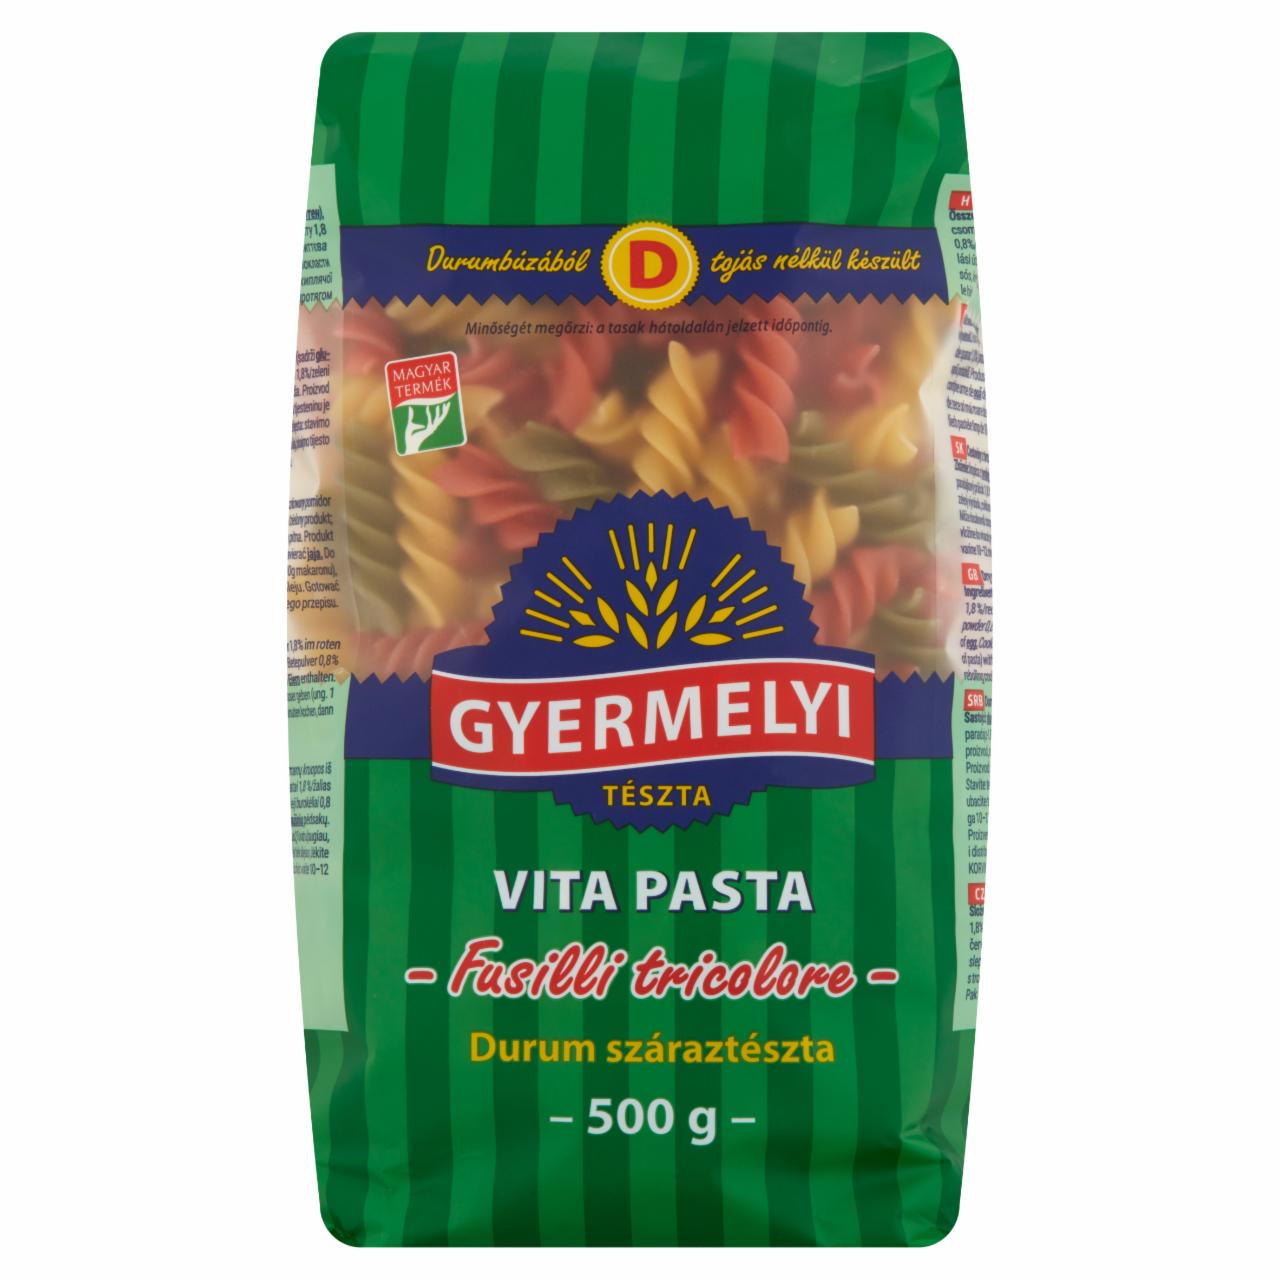 Képek - Gyermelyi Vita Pasta Fusilli Tricolore durum száraztészta 500 g